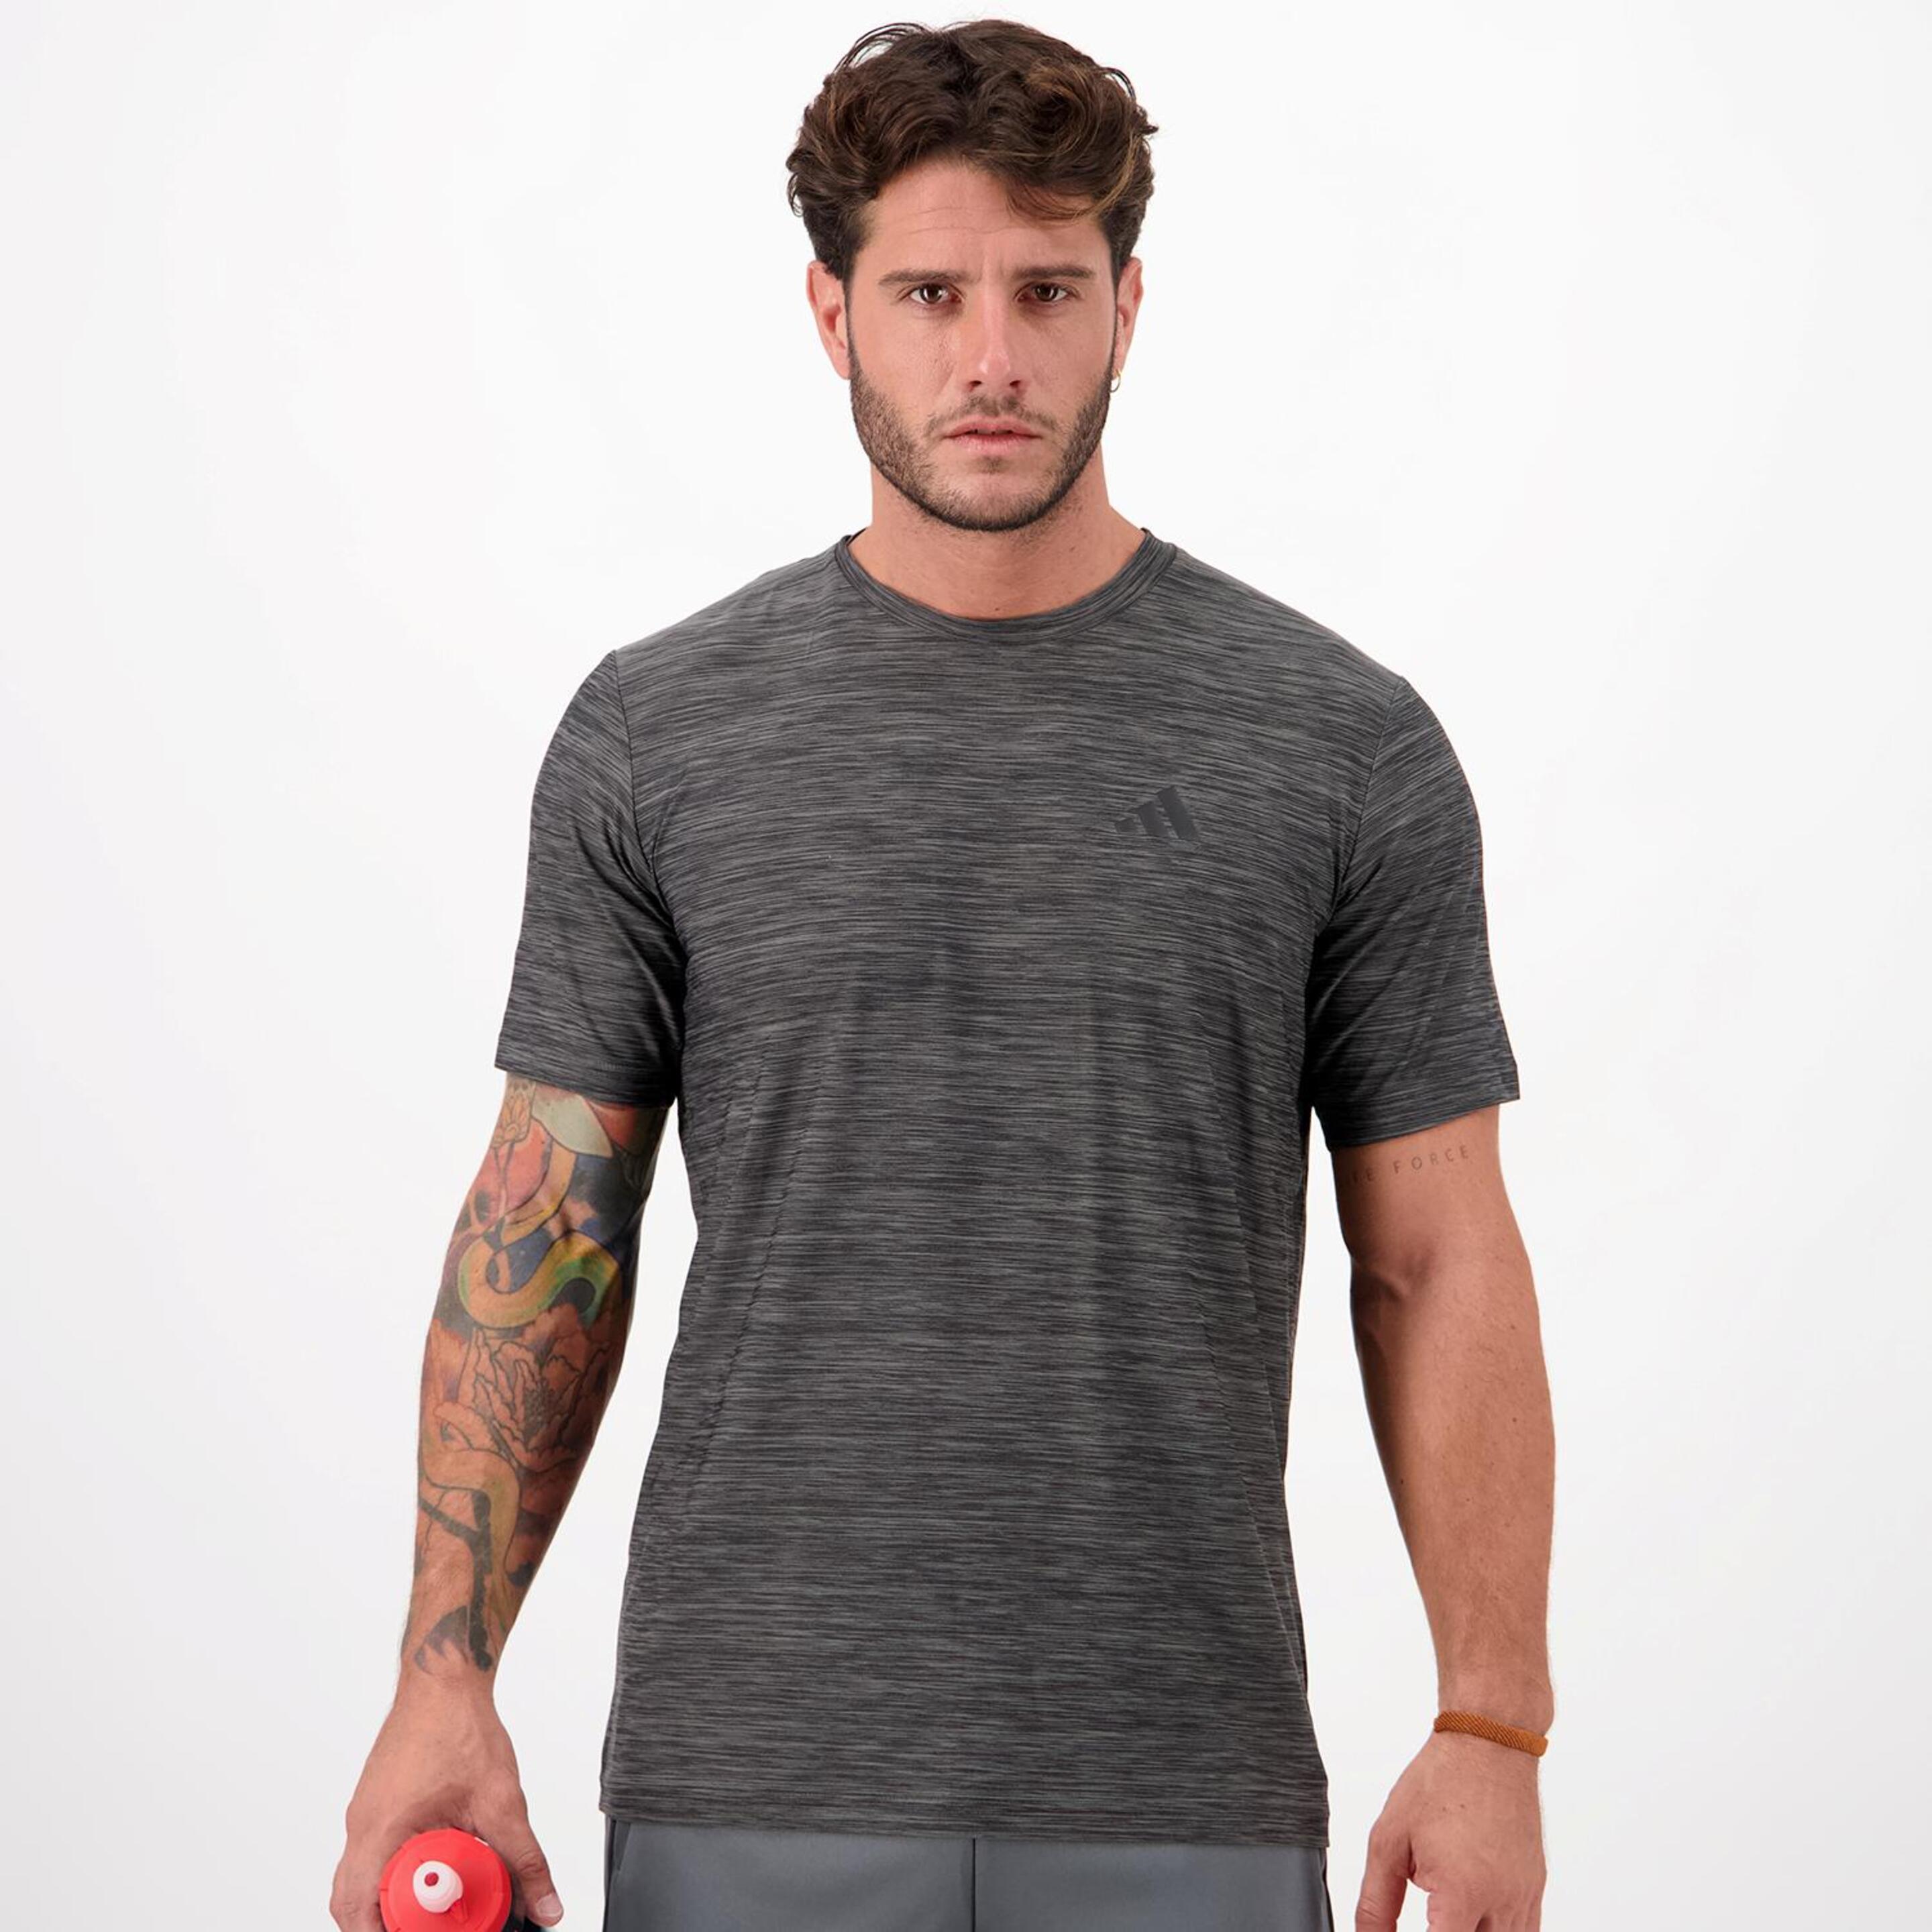 Camiseta adidas - gris - Camiseta Running Hombre